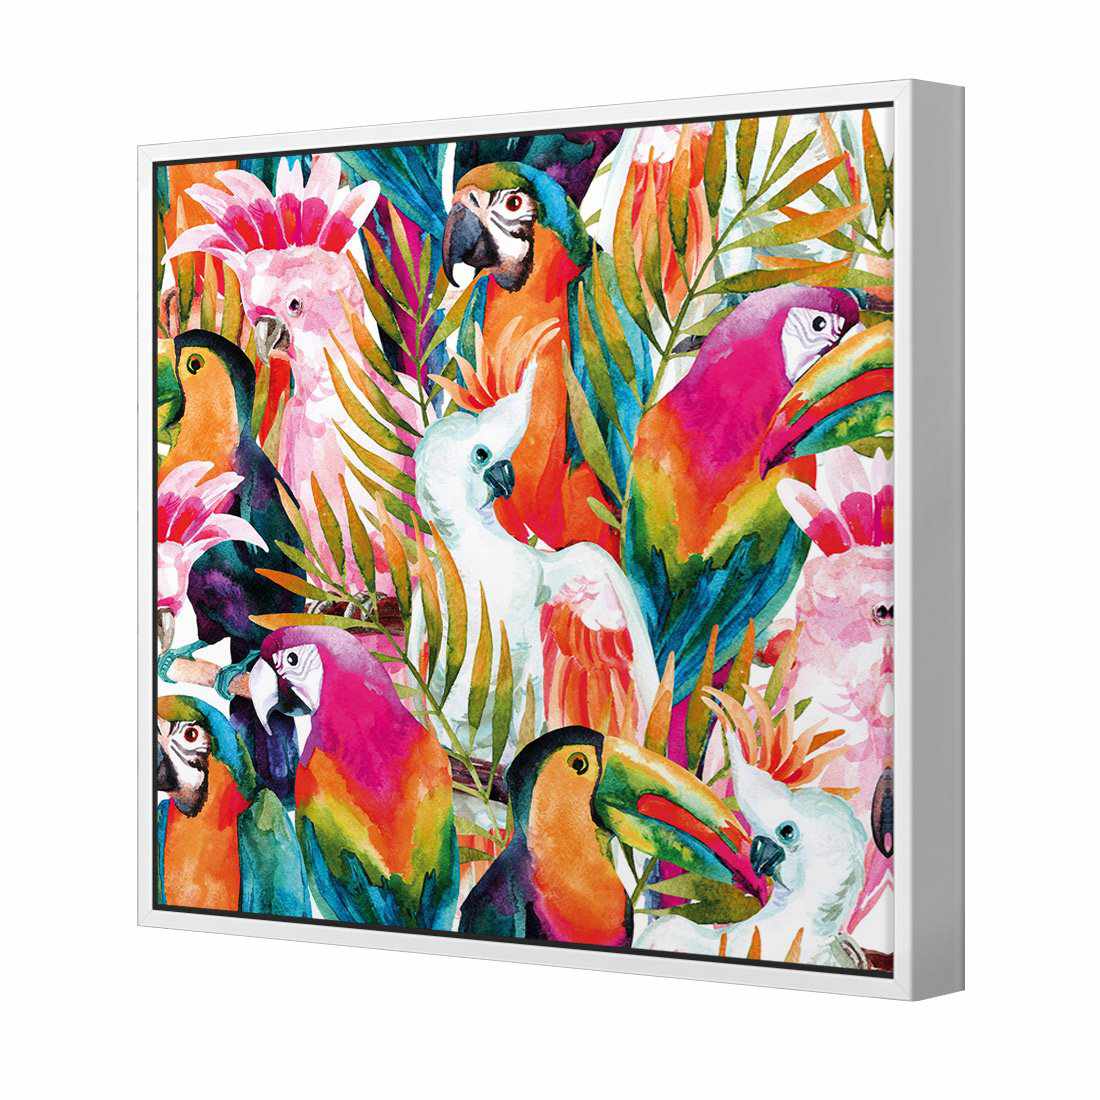 Parrots & Palms, Square Canvas Art-Canvas-Wall Art Designs-30x30cm-Canvas - White Frame-Wall Art Designs